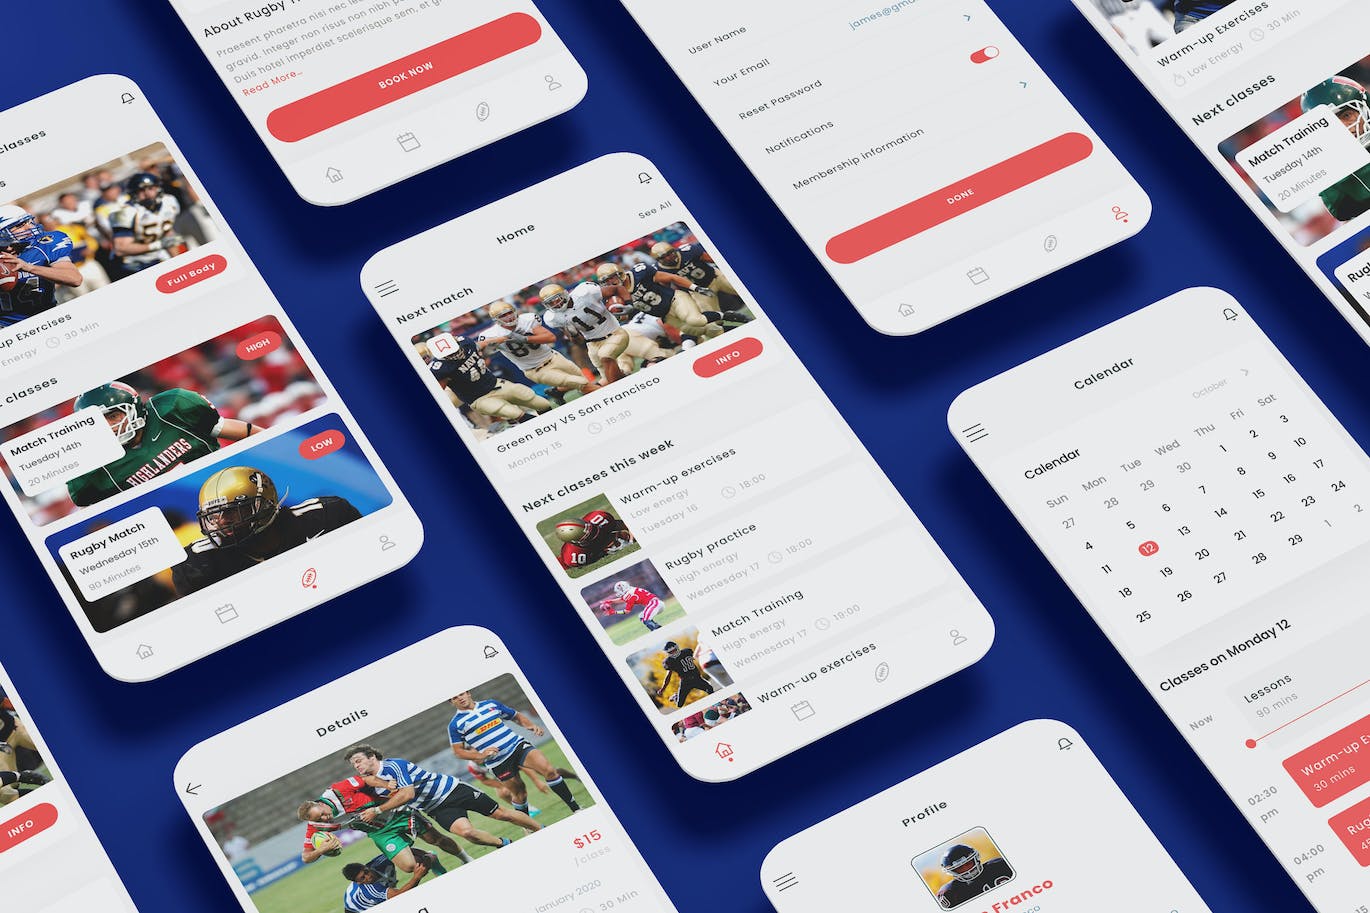 橄榄球学校App UI Kit (AI,EPS,FIG,PSD,SKETCH,SVG,XD)